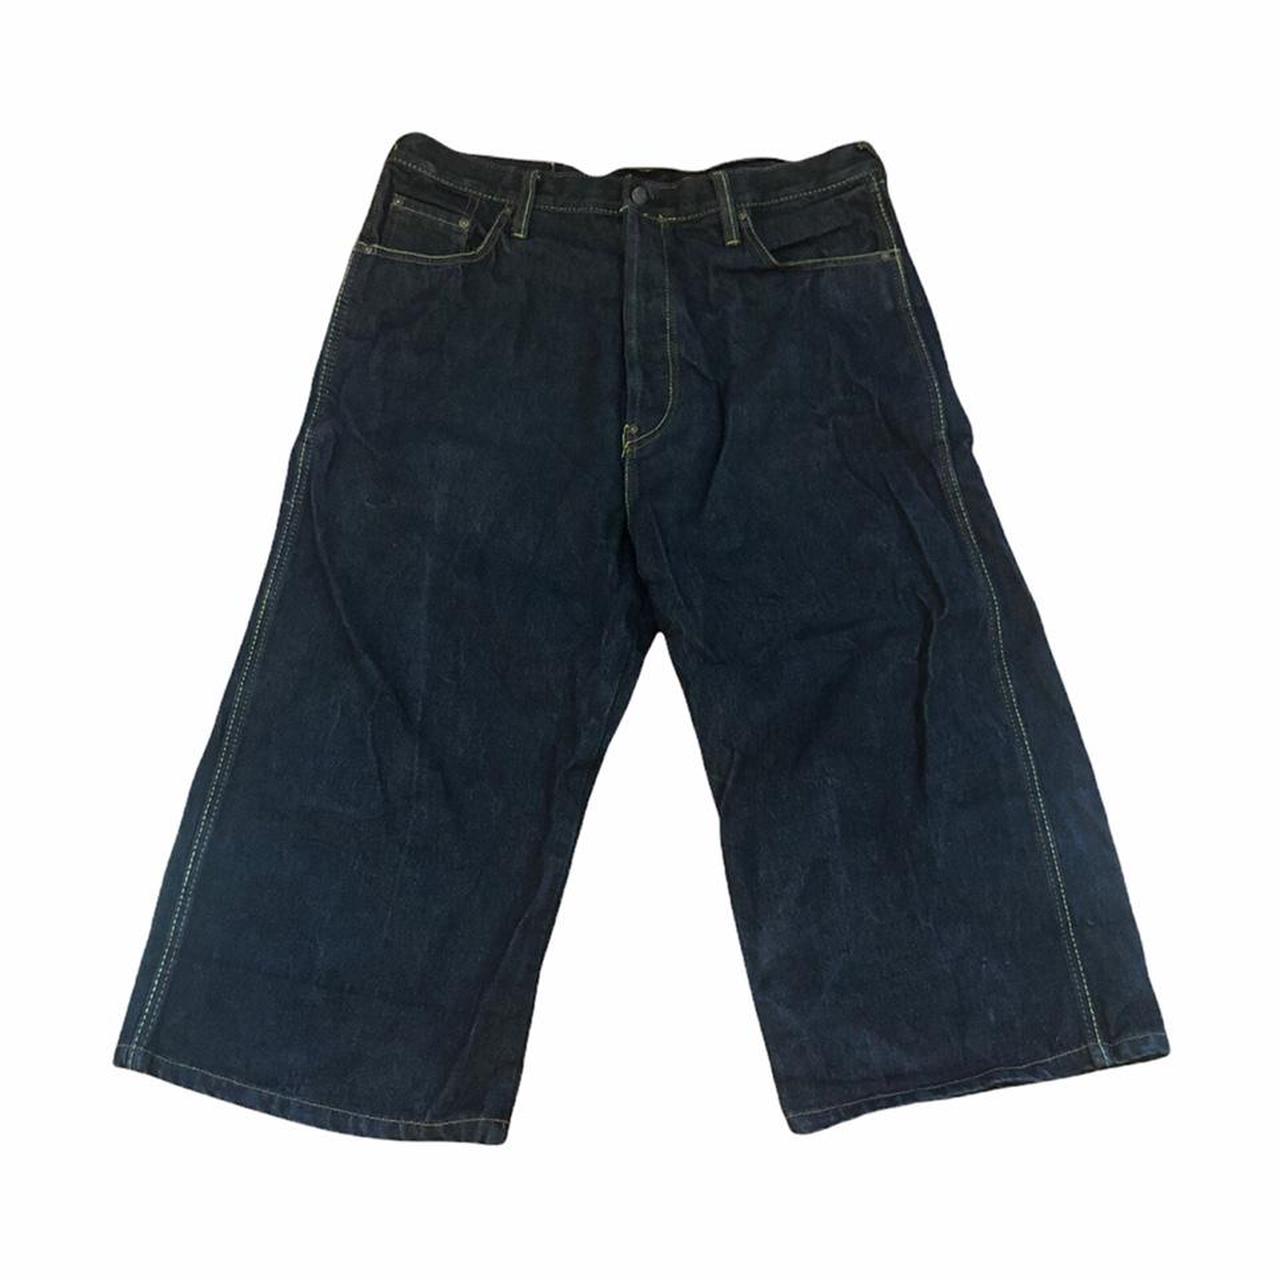 Vintage Evisu Genes Denim Shorts Jeans Size... - Depop